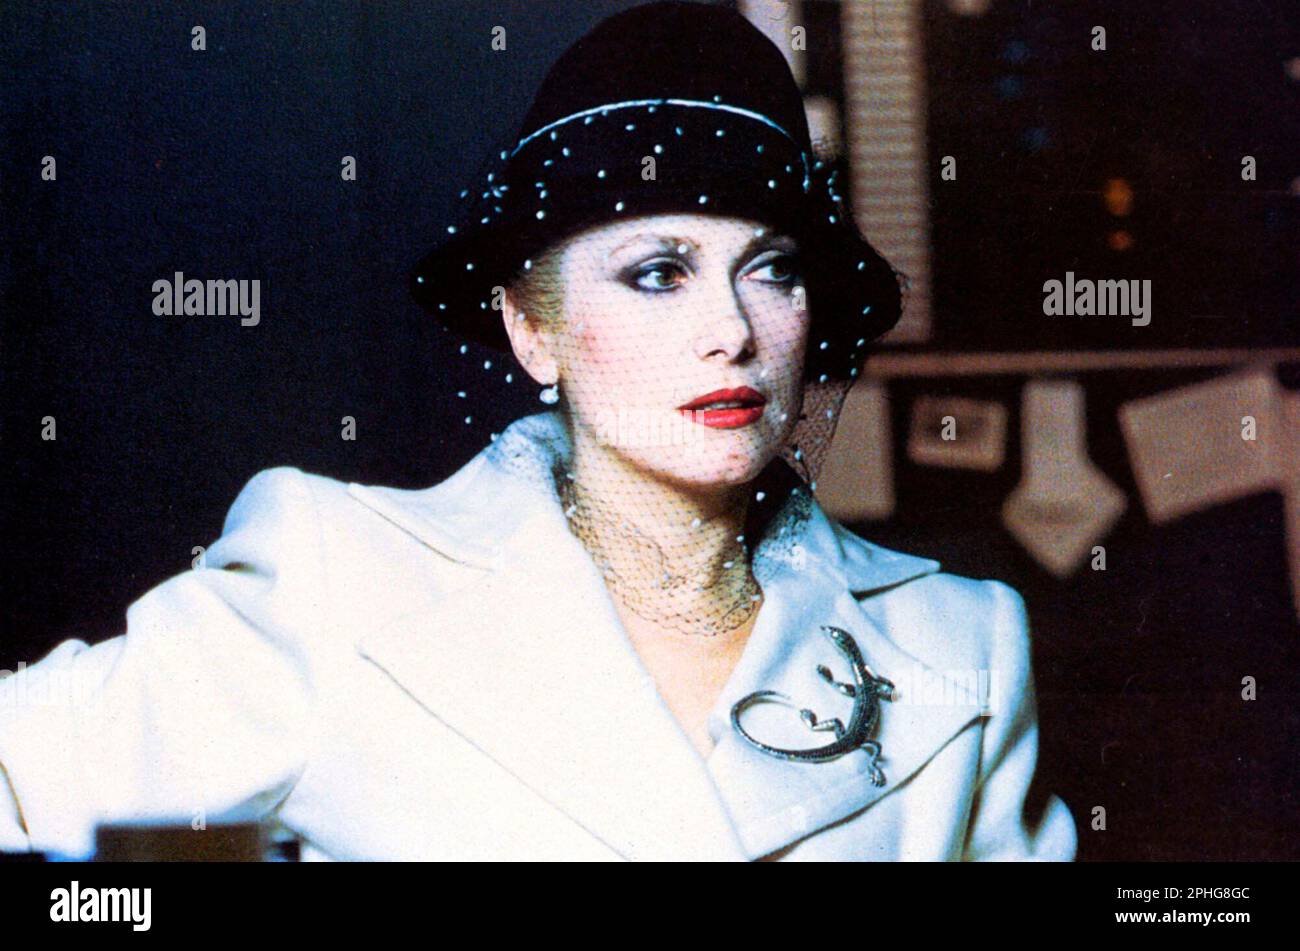 CATHERINE DENEUVE en EL HAMBRE (1983), dirigida por TONY SCOTT. Crédito: Metro-Goldwyn-Mayer (MGM) / Álbum Foto de stock